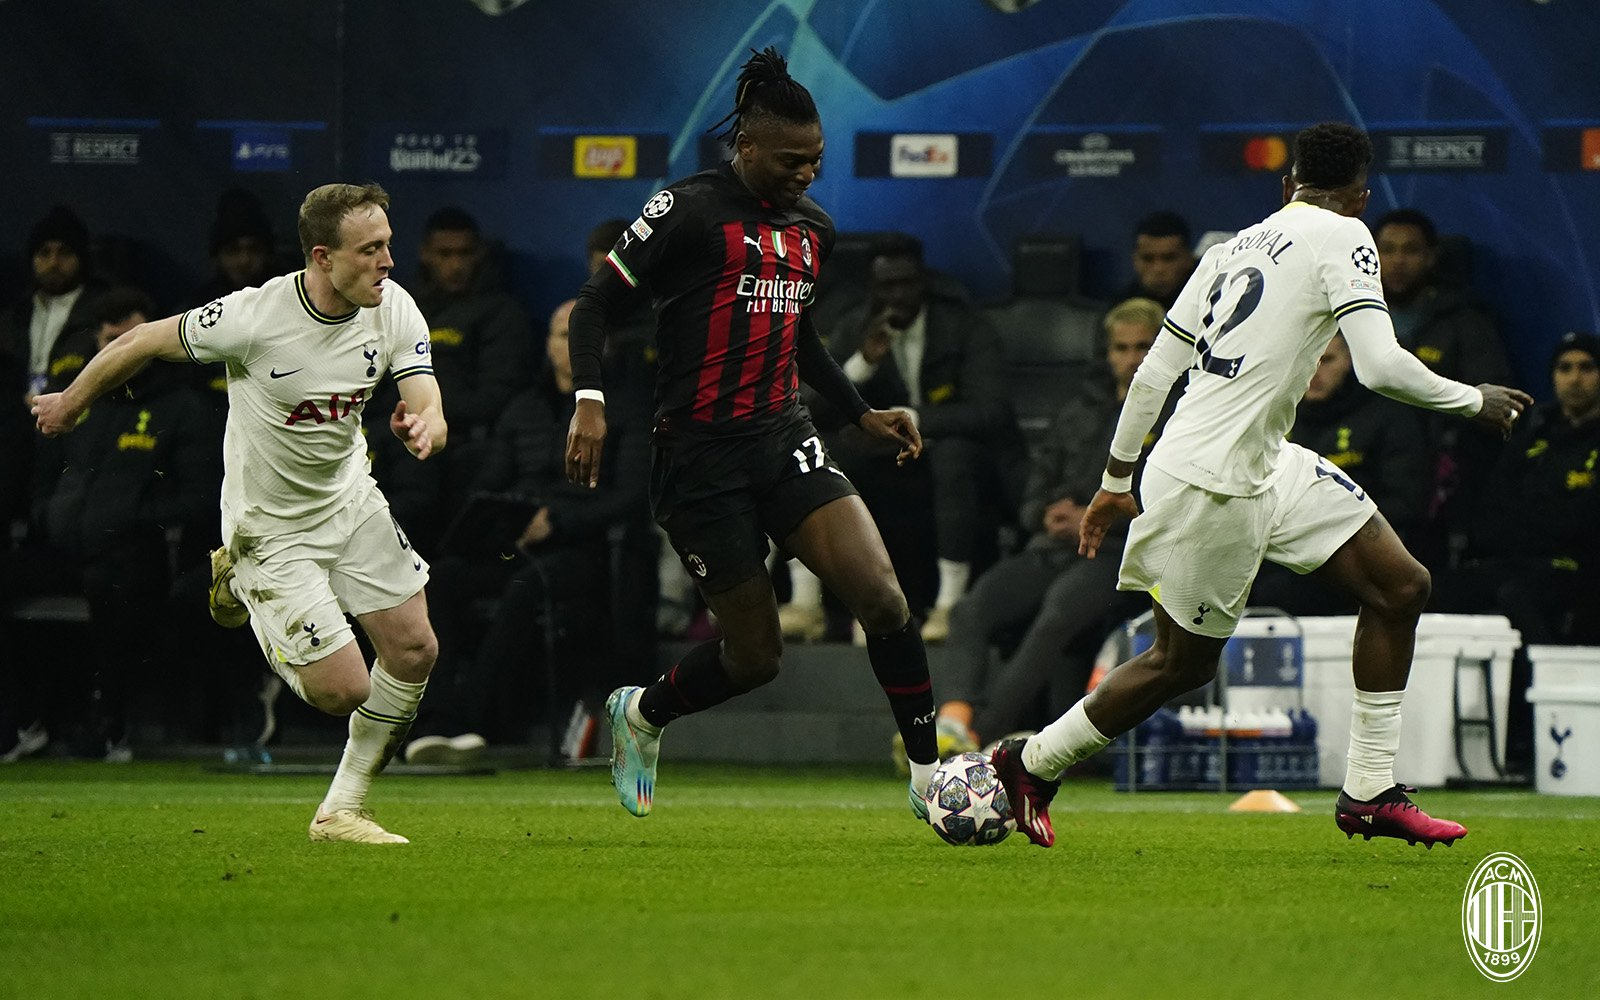 Tottenham x Milan - onde assistir ao vivo, horário e escalações